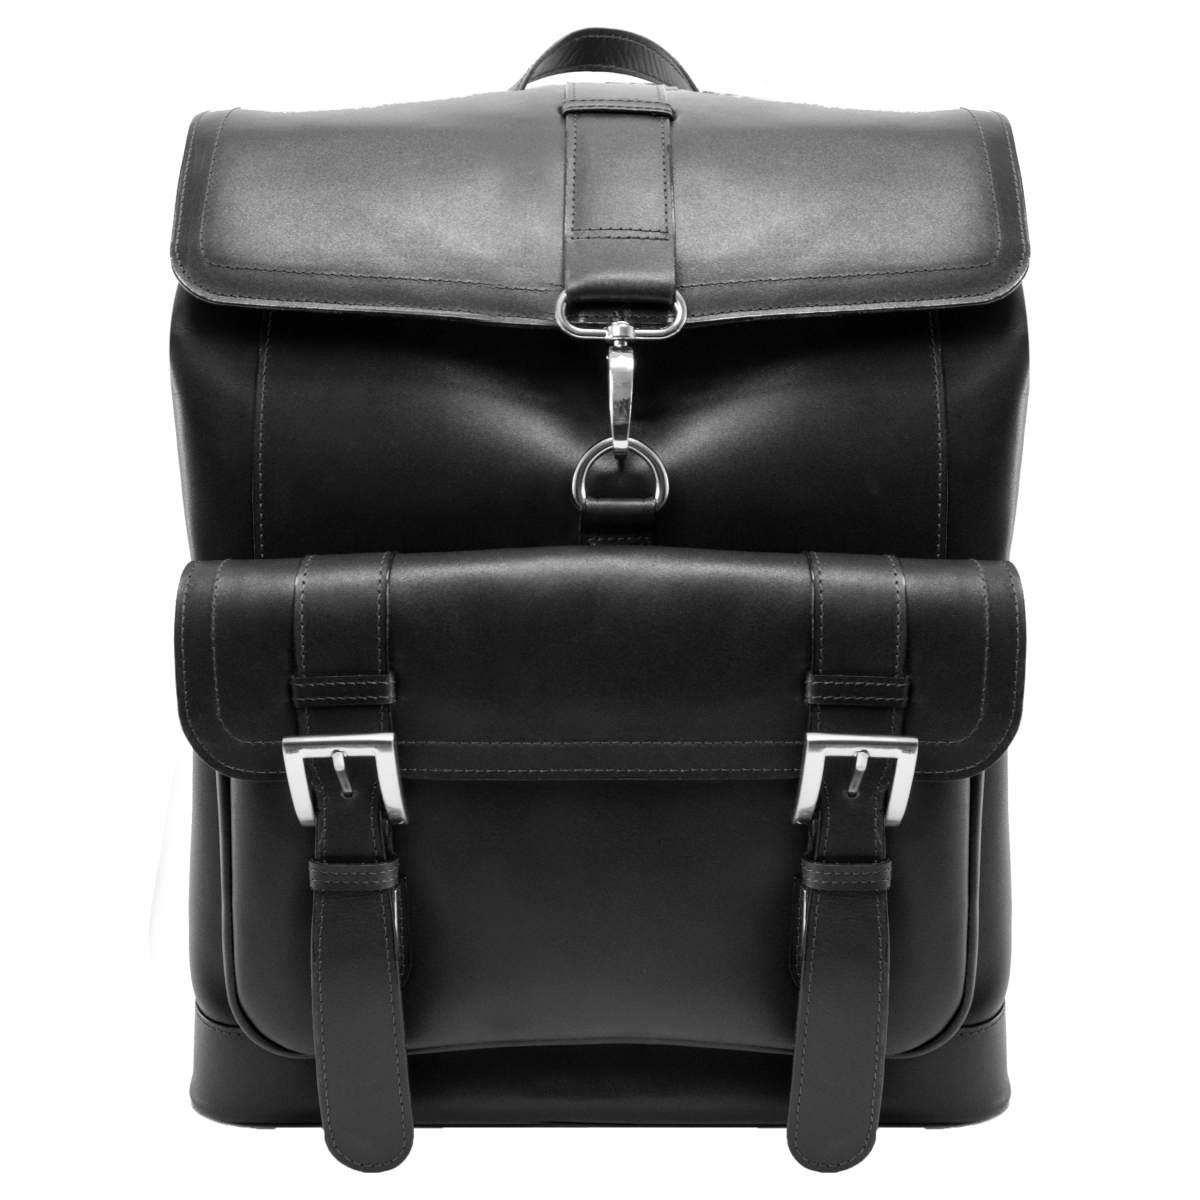 Hagen Leather Laptop Backpack, Black